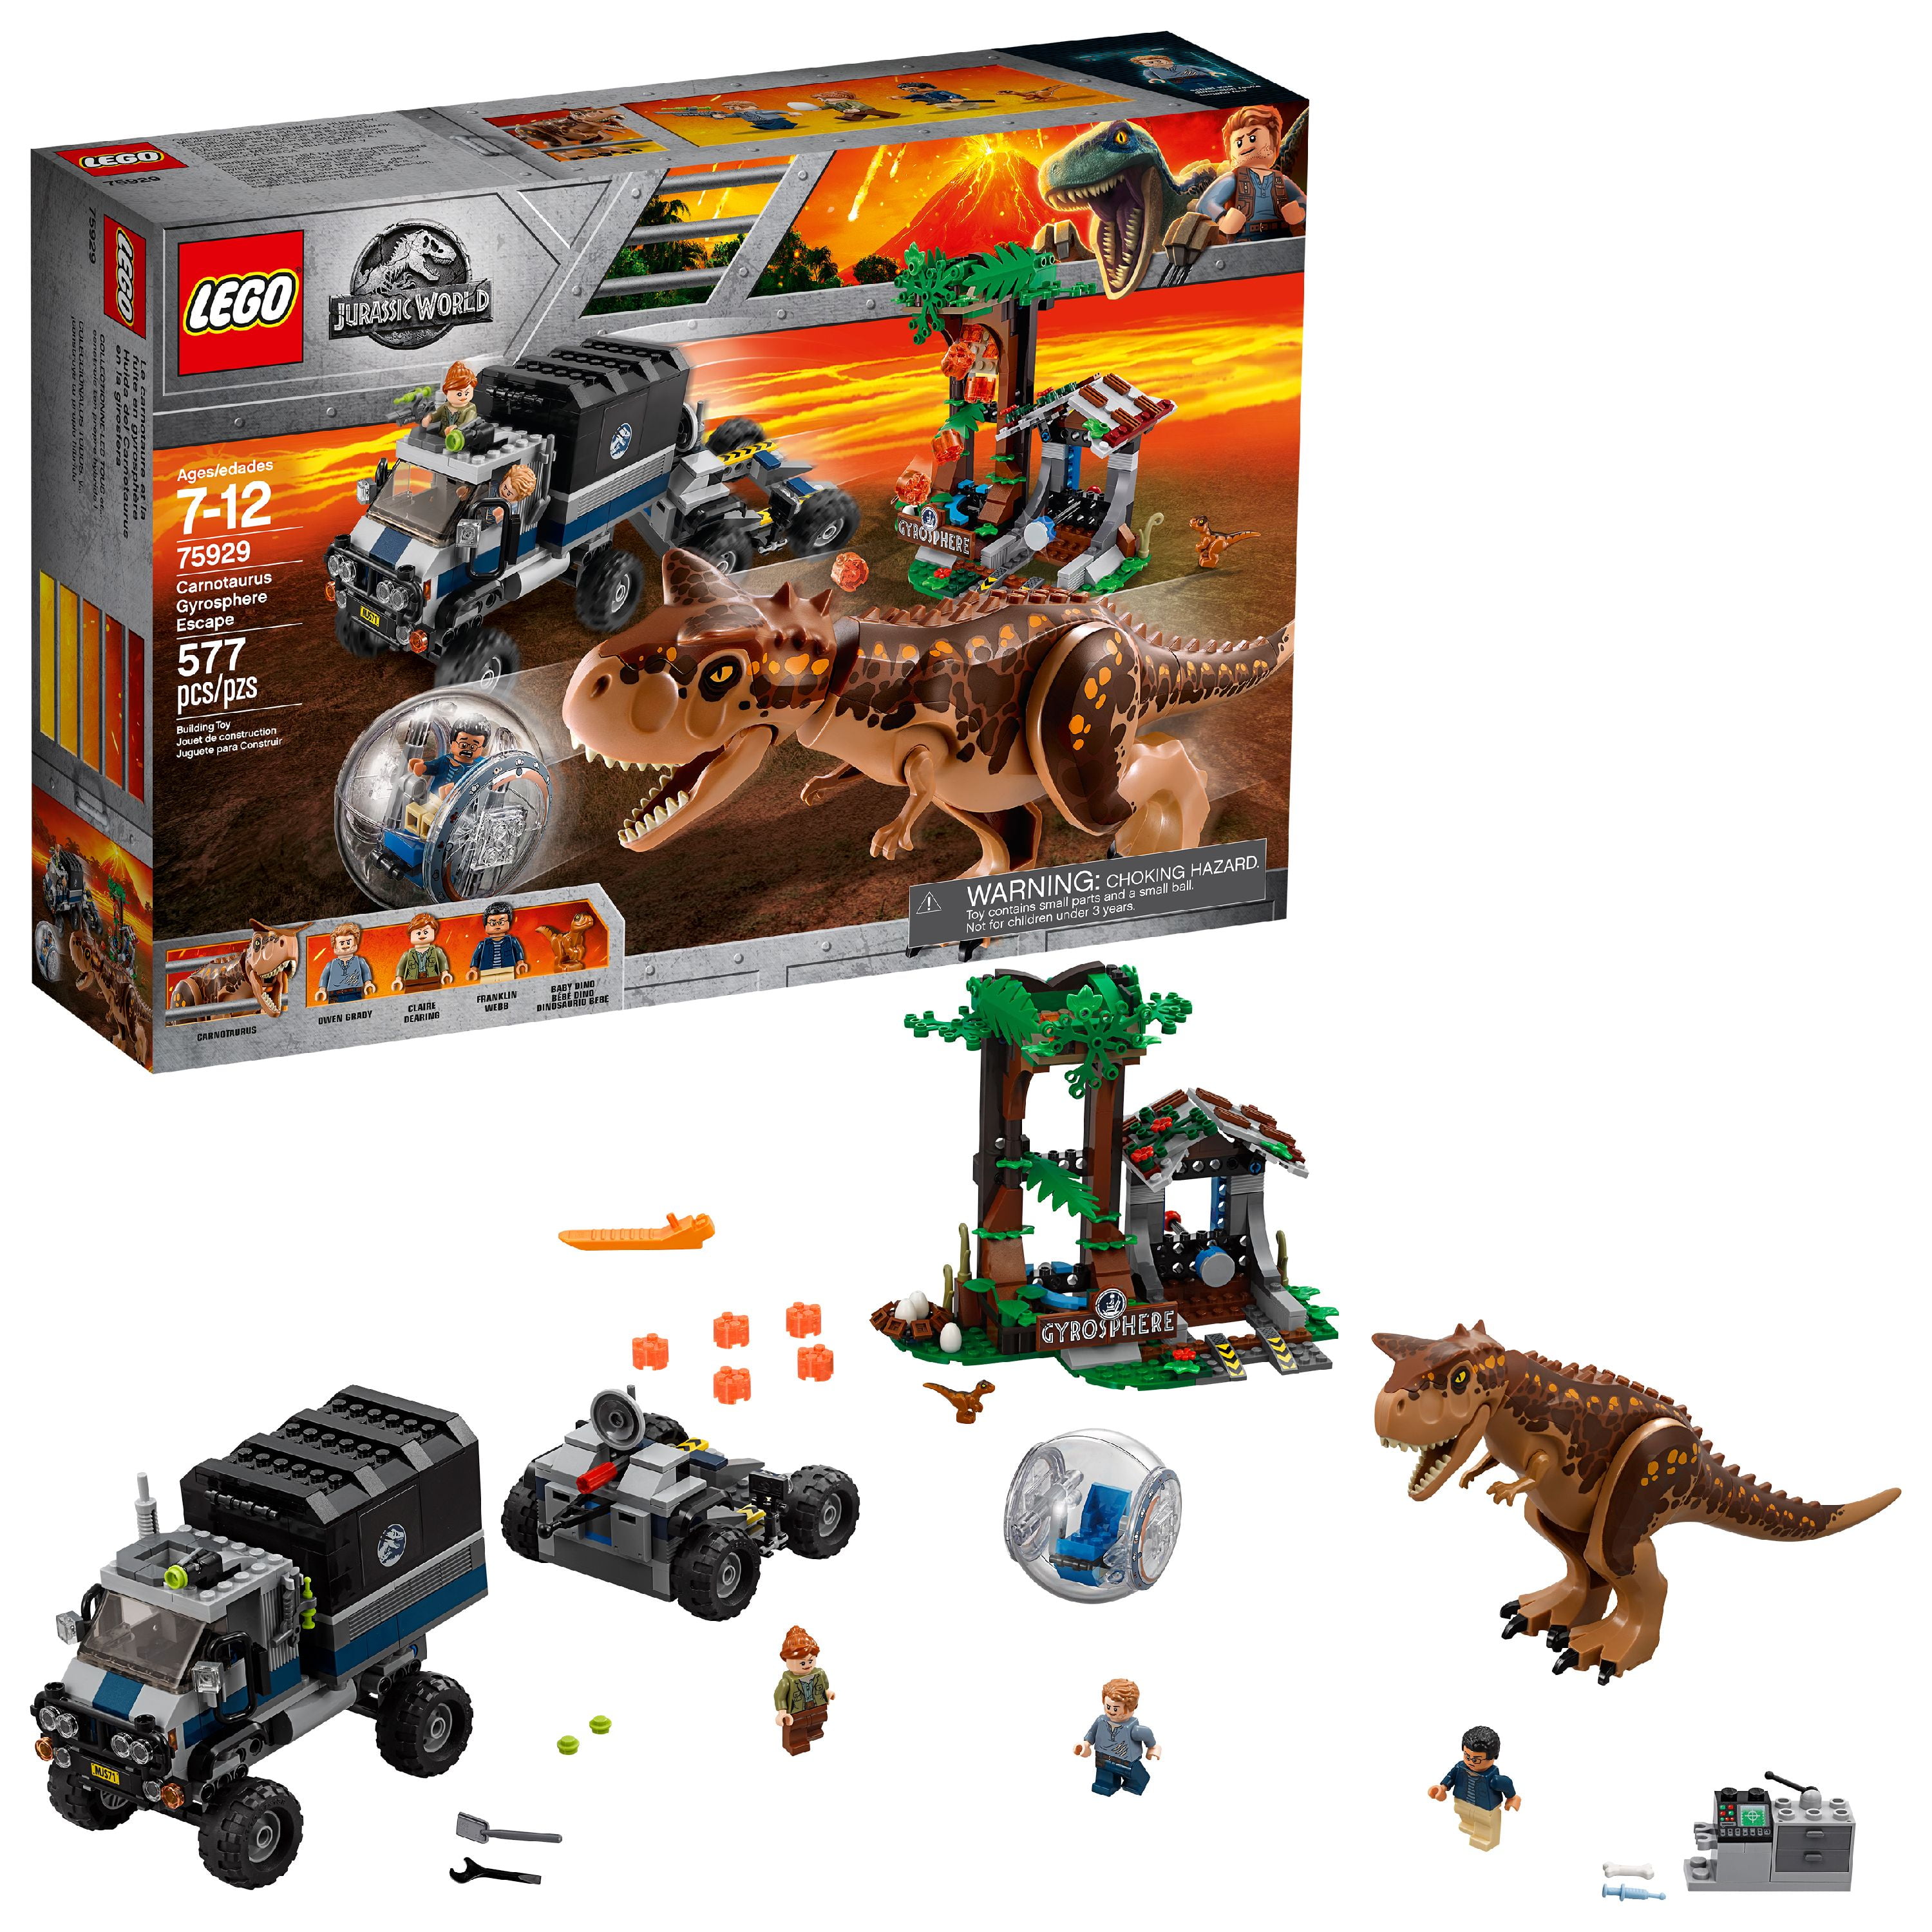 LEGO - Jurassic World Dinos - Lot of 8 Dinosaurs from 2018 Jurassic World  sets